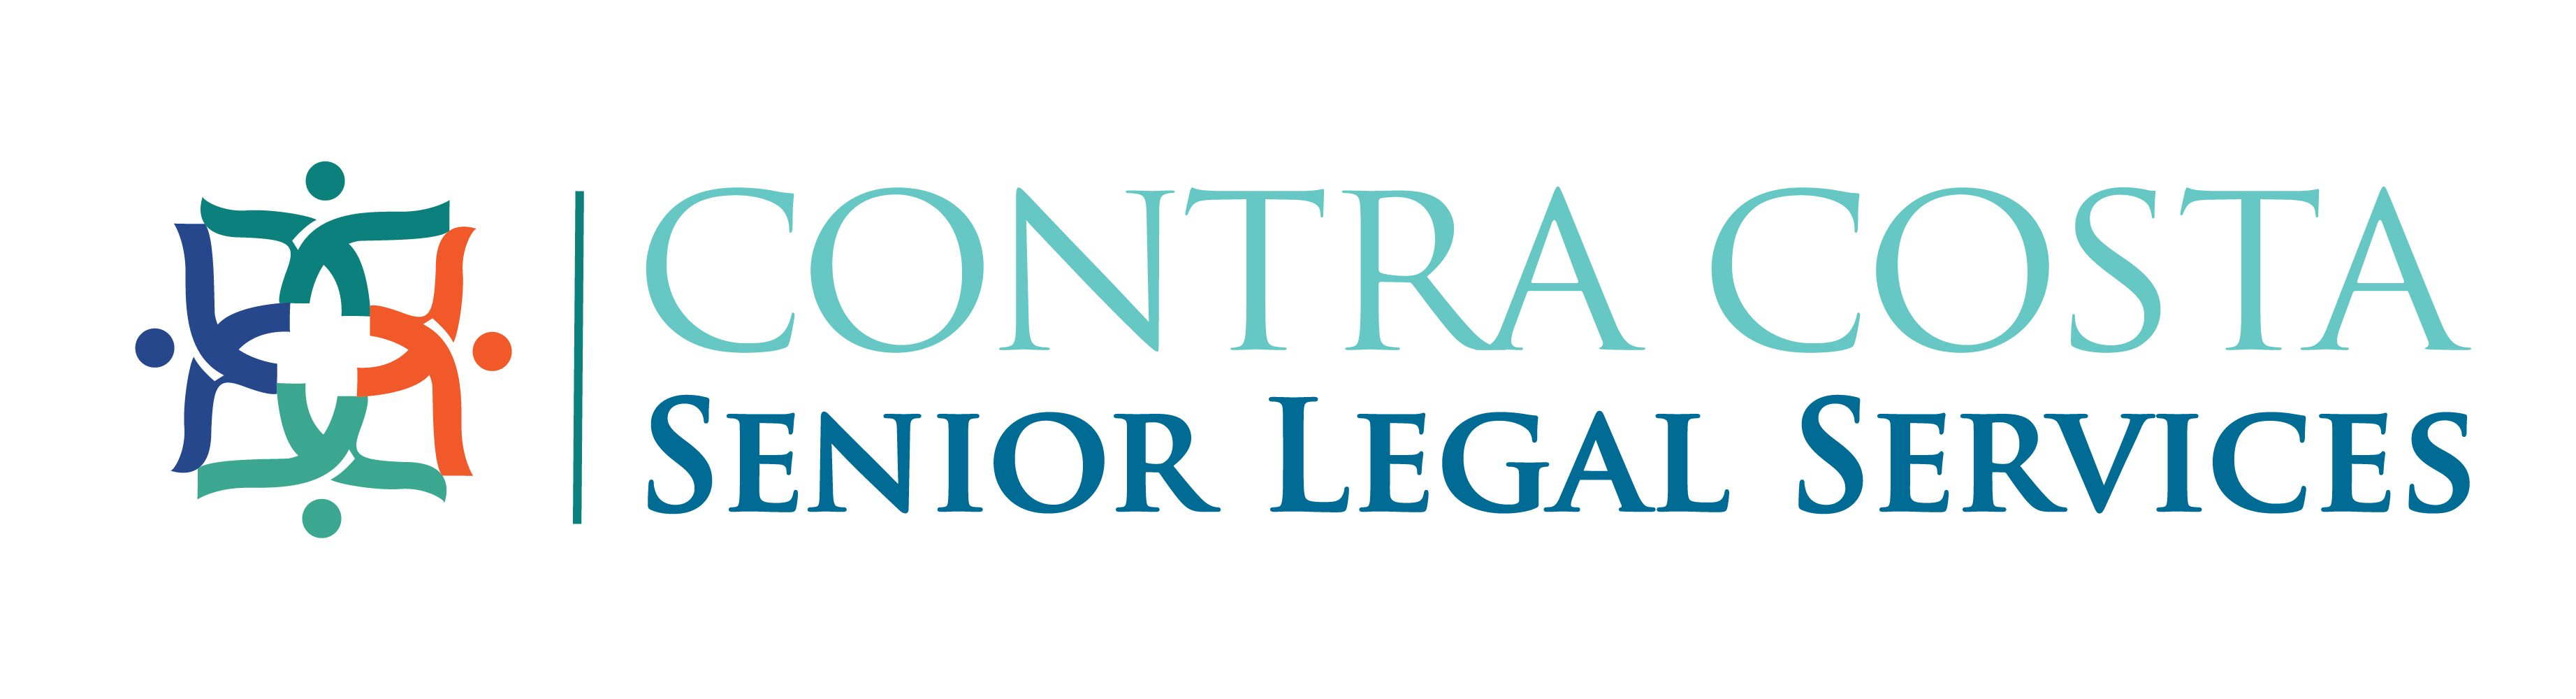 Senior Legal Services